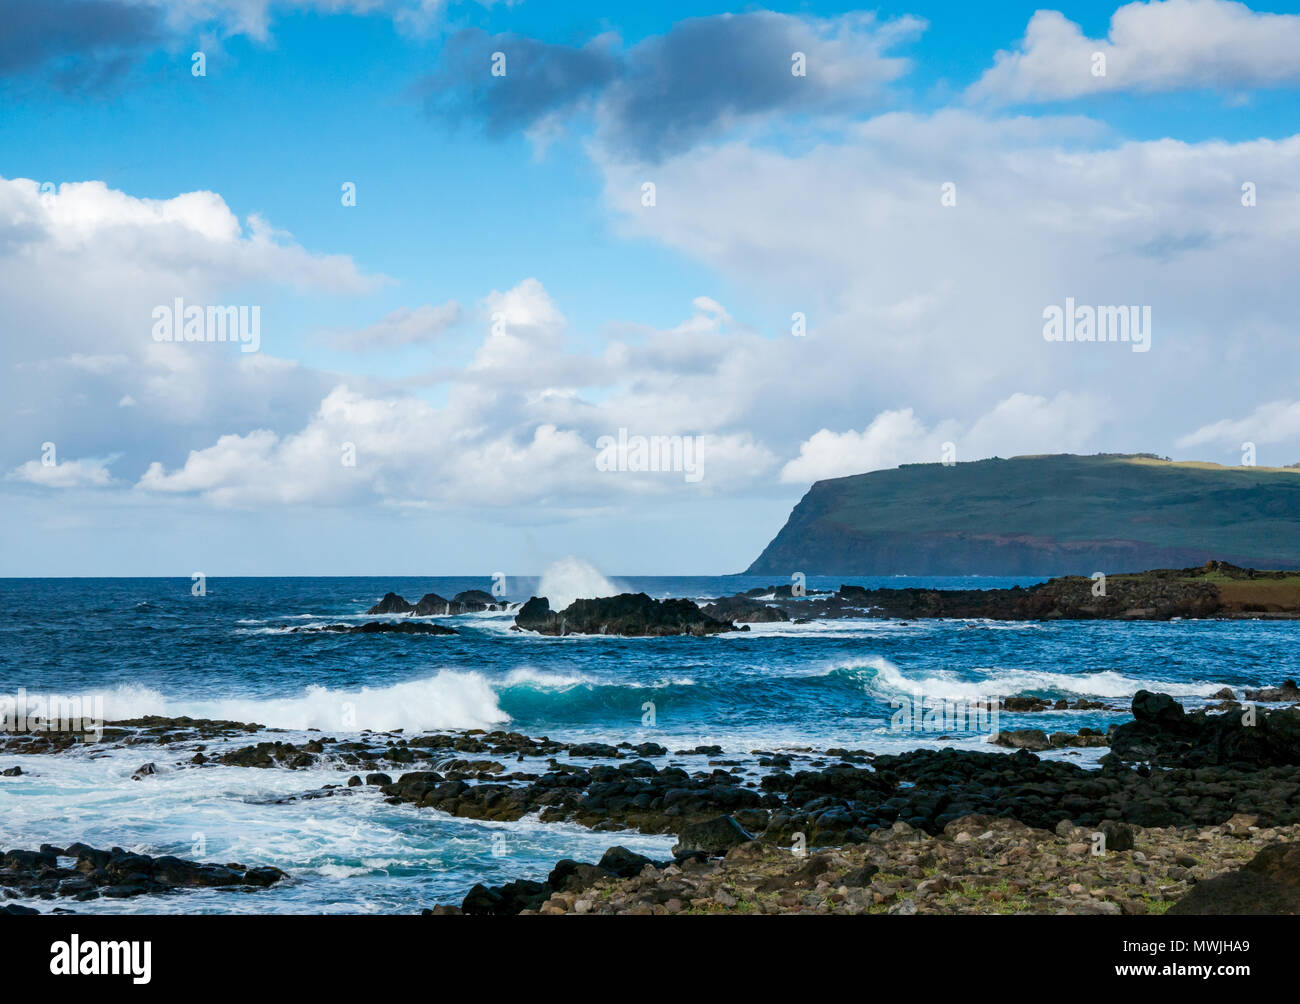 Olas rompiendo en la orilla rocosa, la costa sur de la Isla de Pascua, Rapa Nui, Chile, con vista del volcán extinto Rano Kau Foto de stock